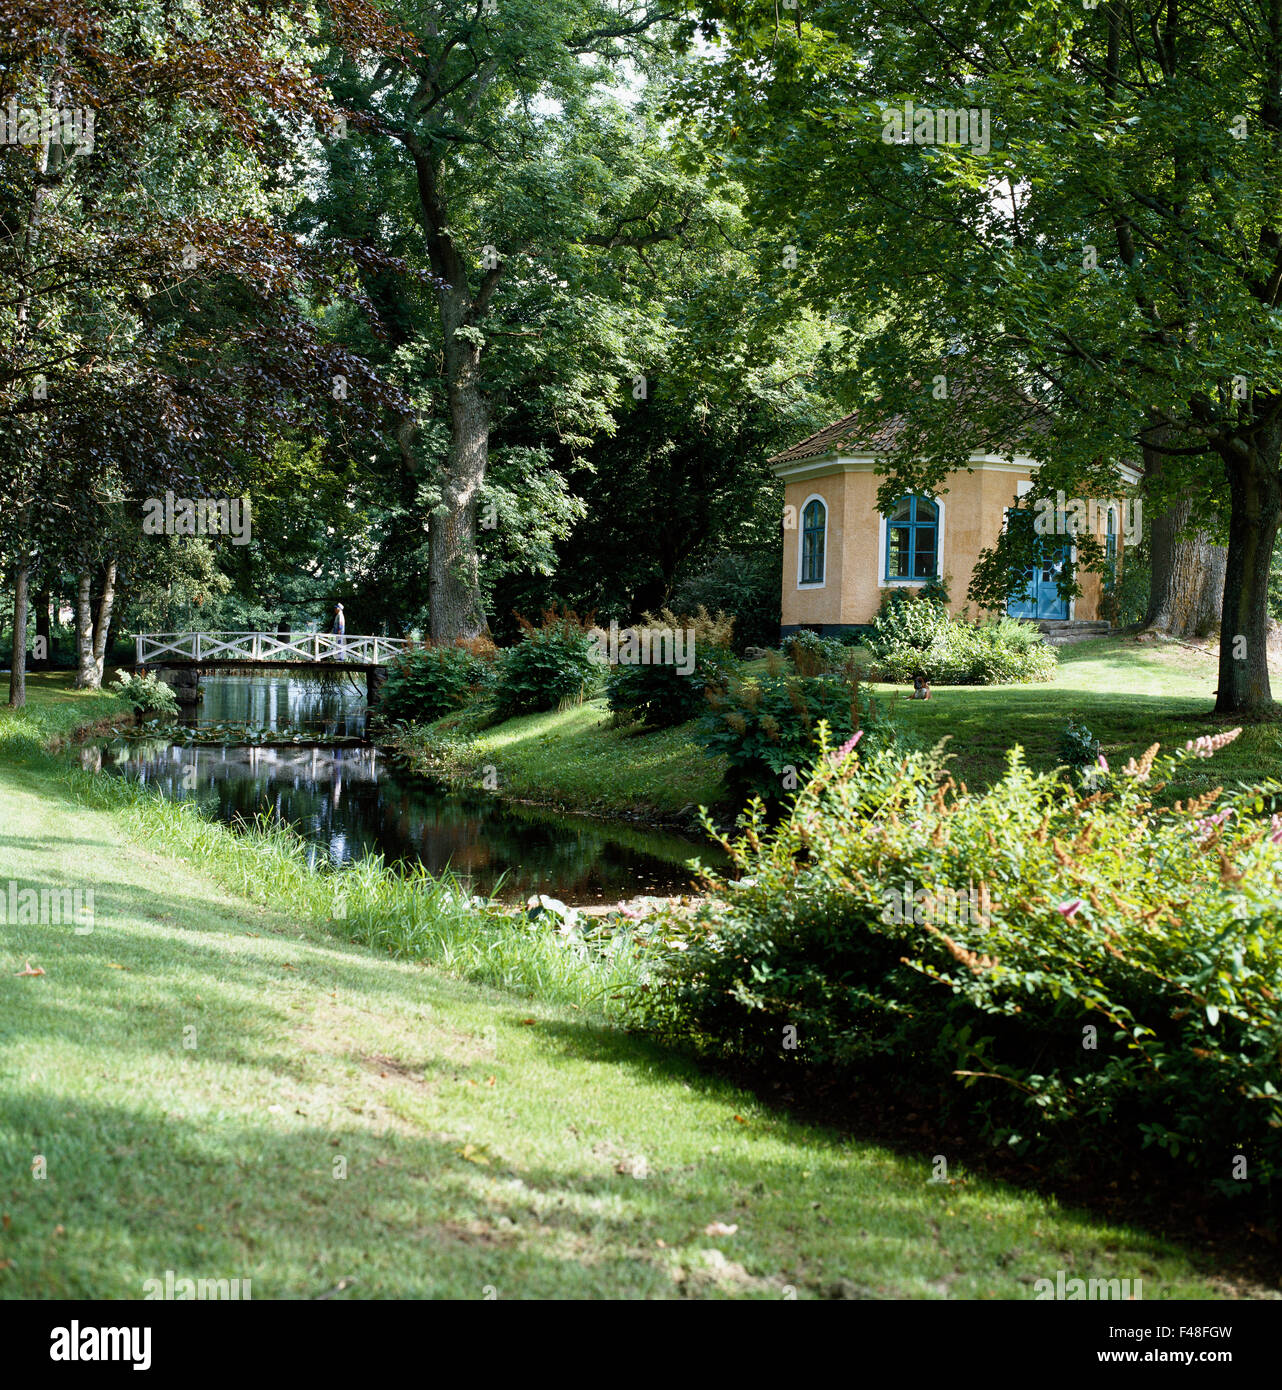 Un ruisseau et un pavillon de jardin dans un jardin, Smaland, Suède. Banque D'Images